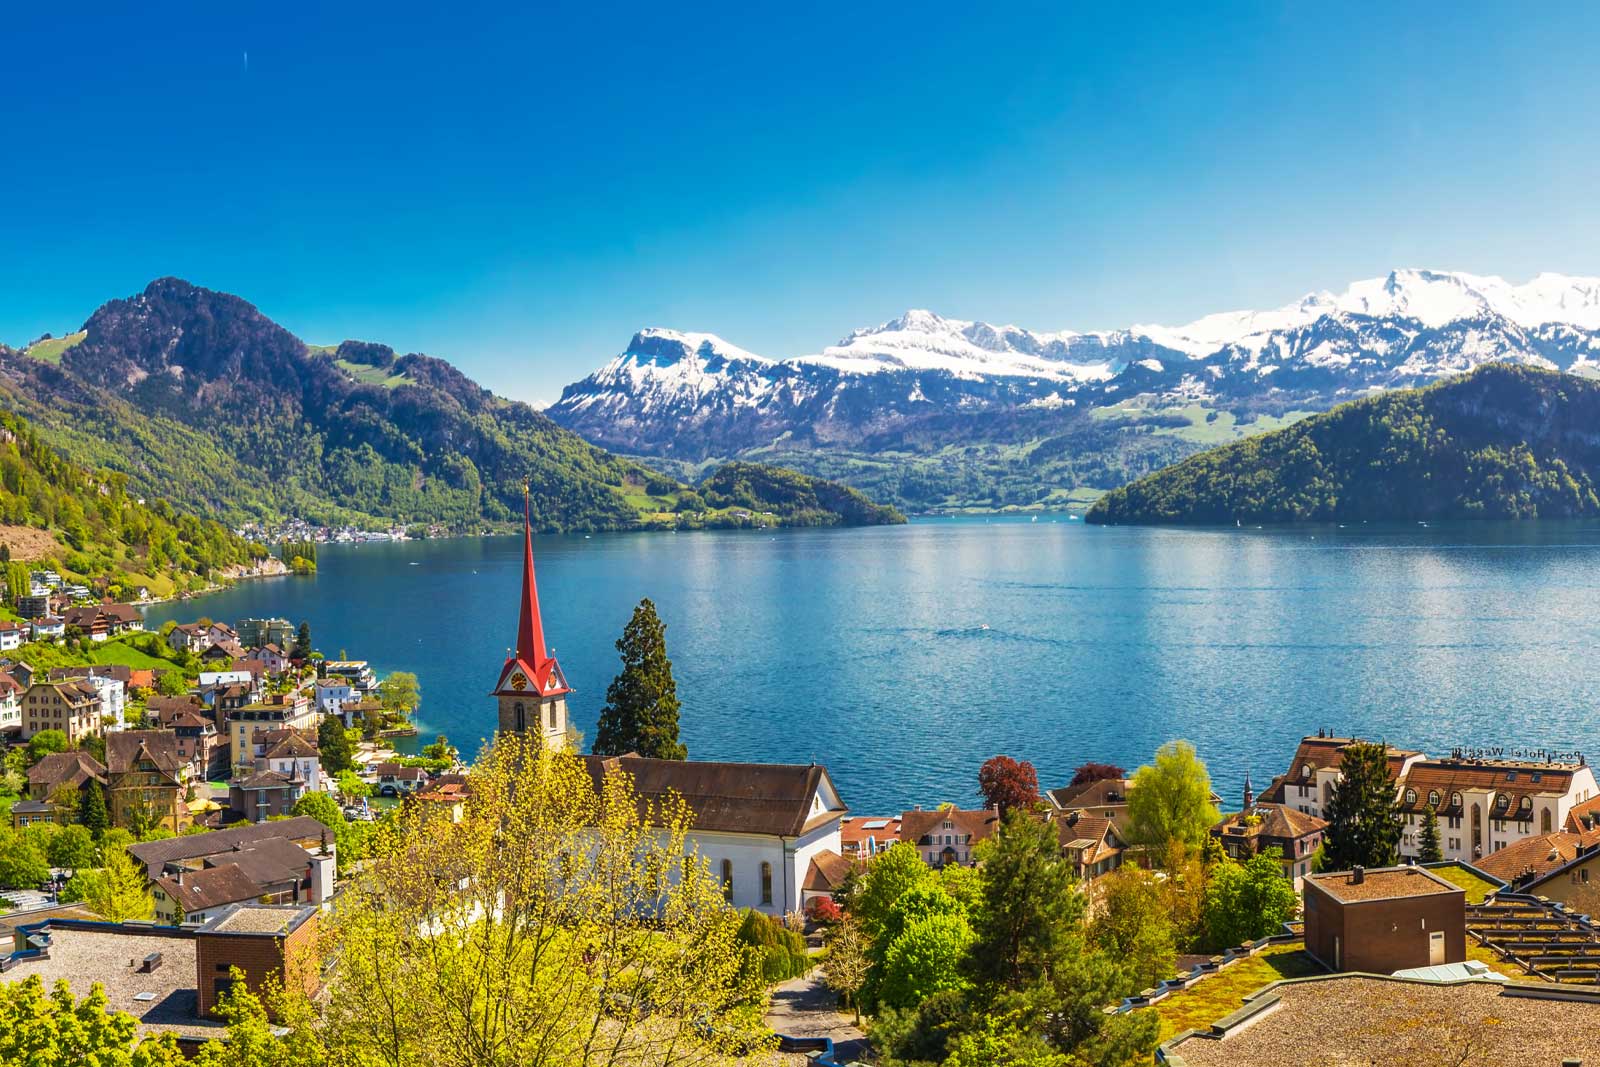 琉森湖 Lake Lucerne